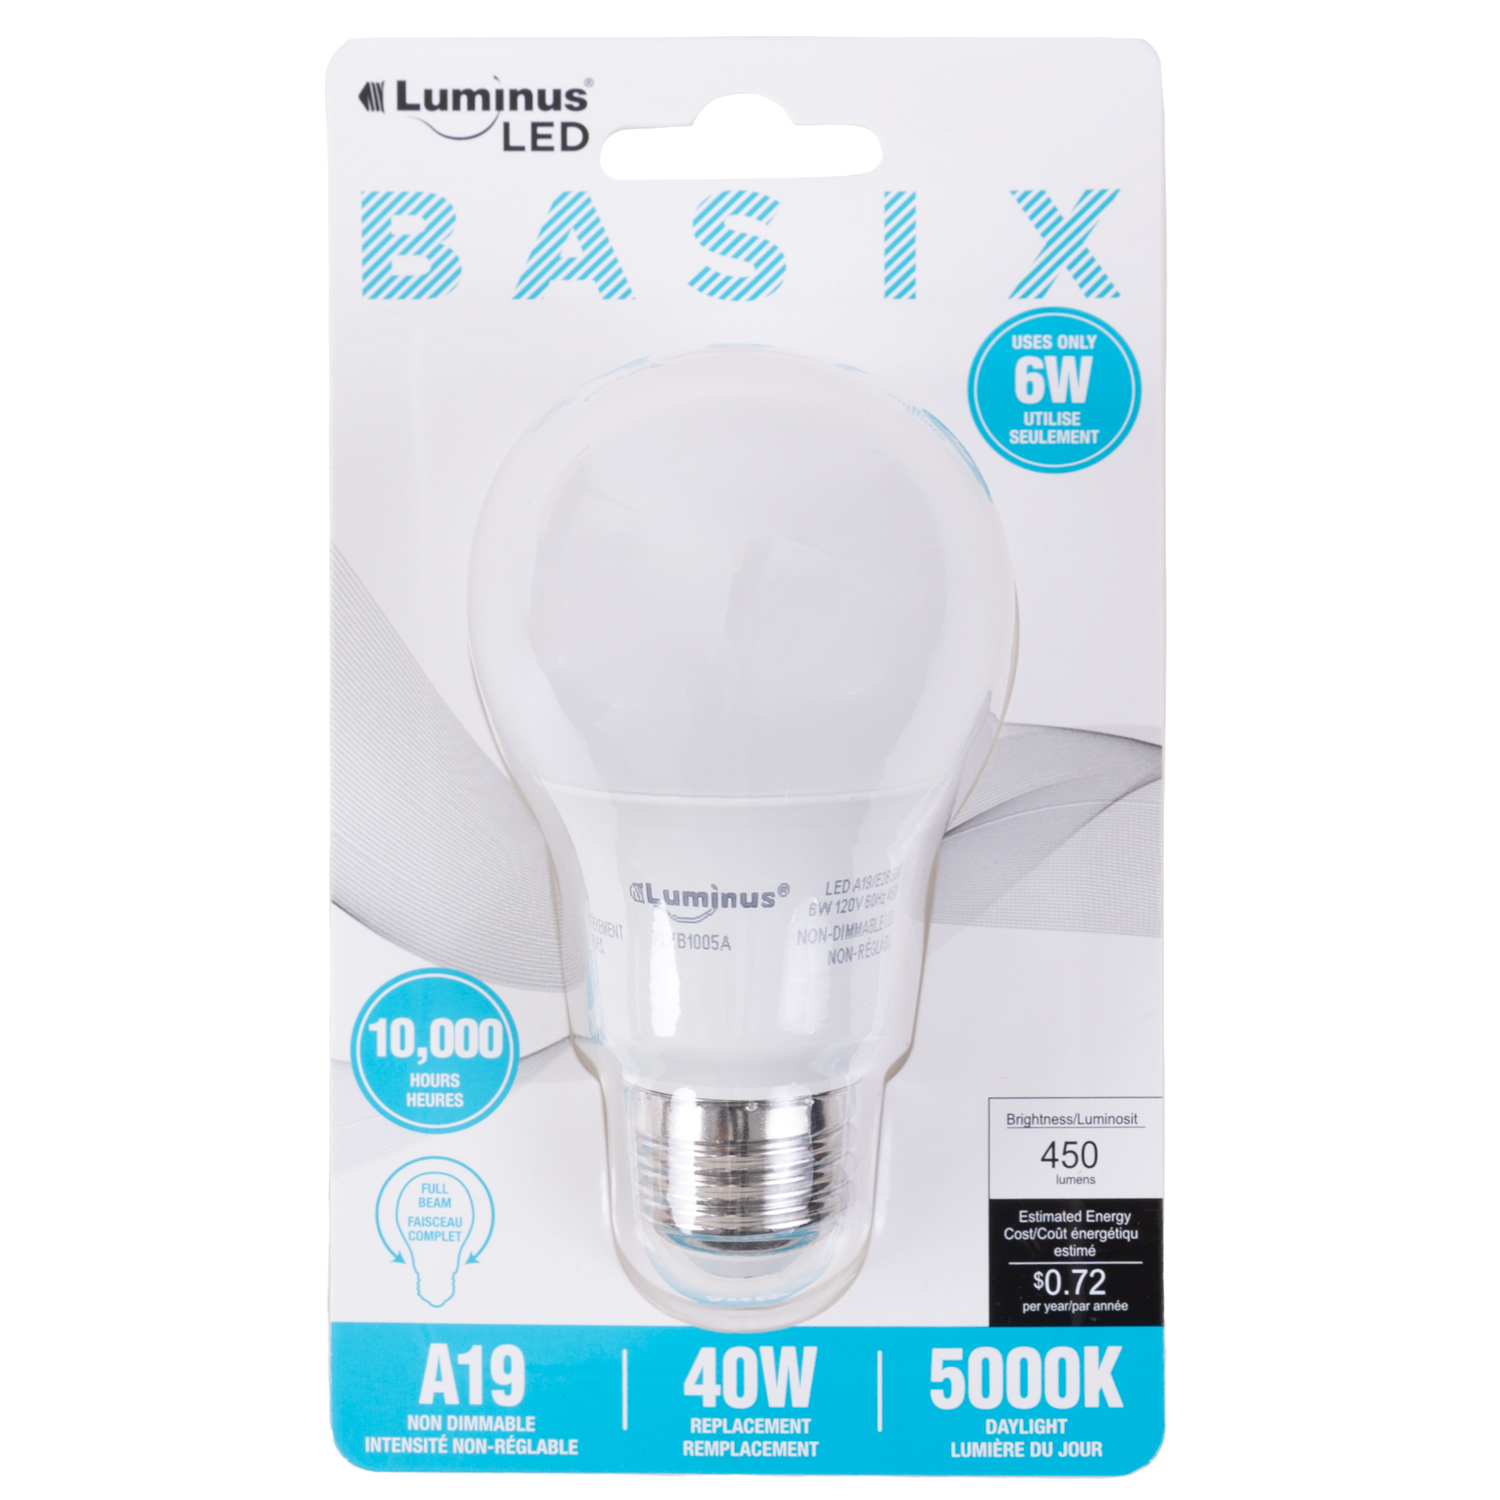 Luminus - Basix - LED lightbulb, 6W